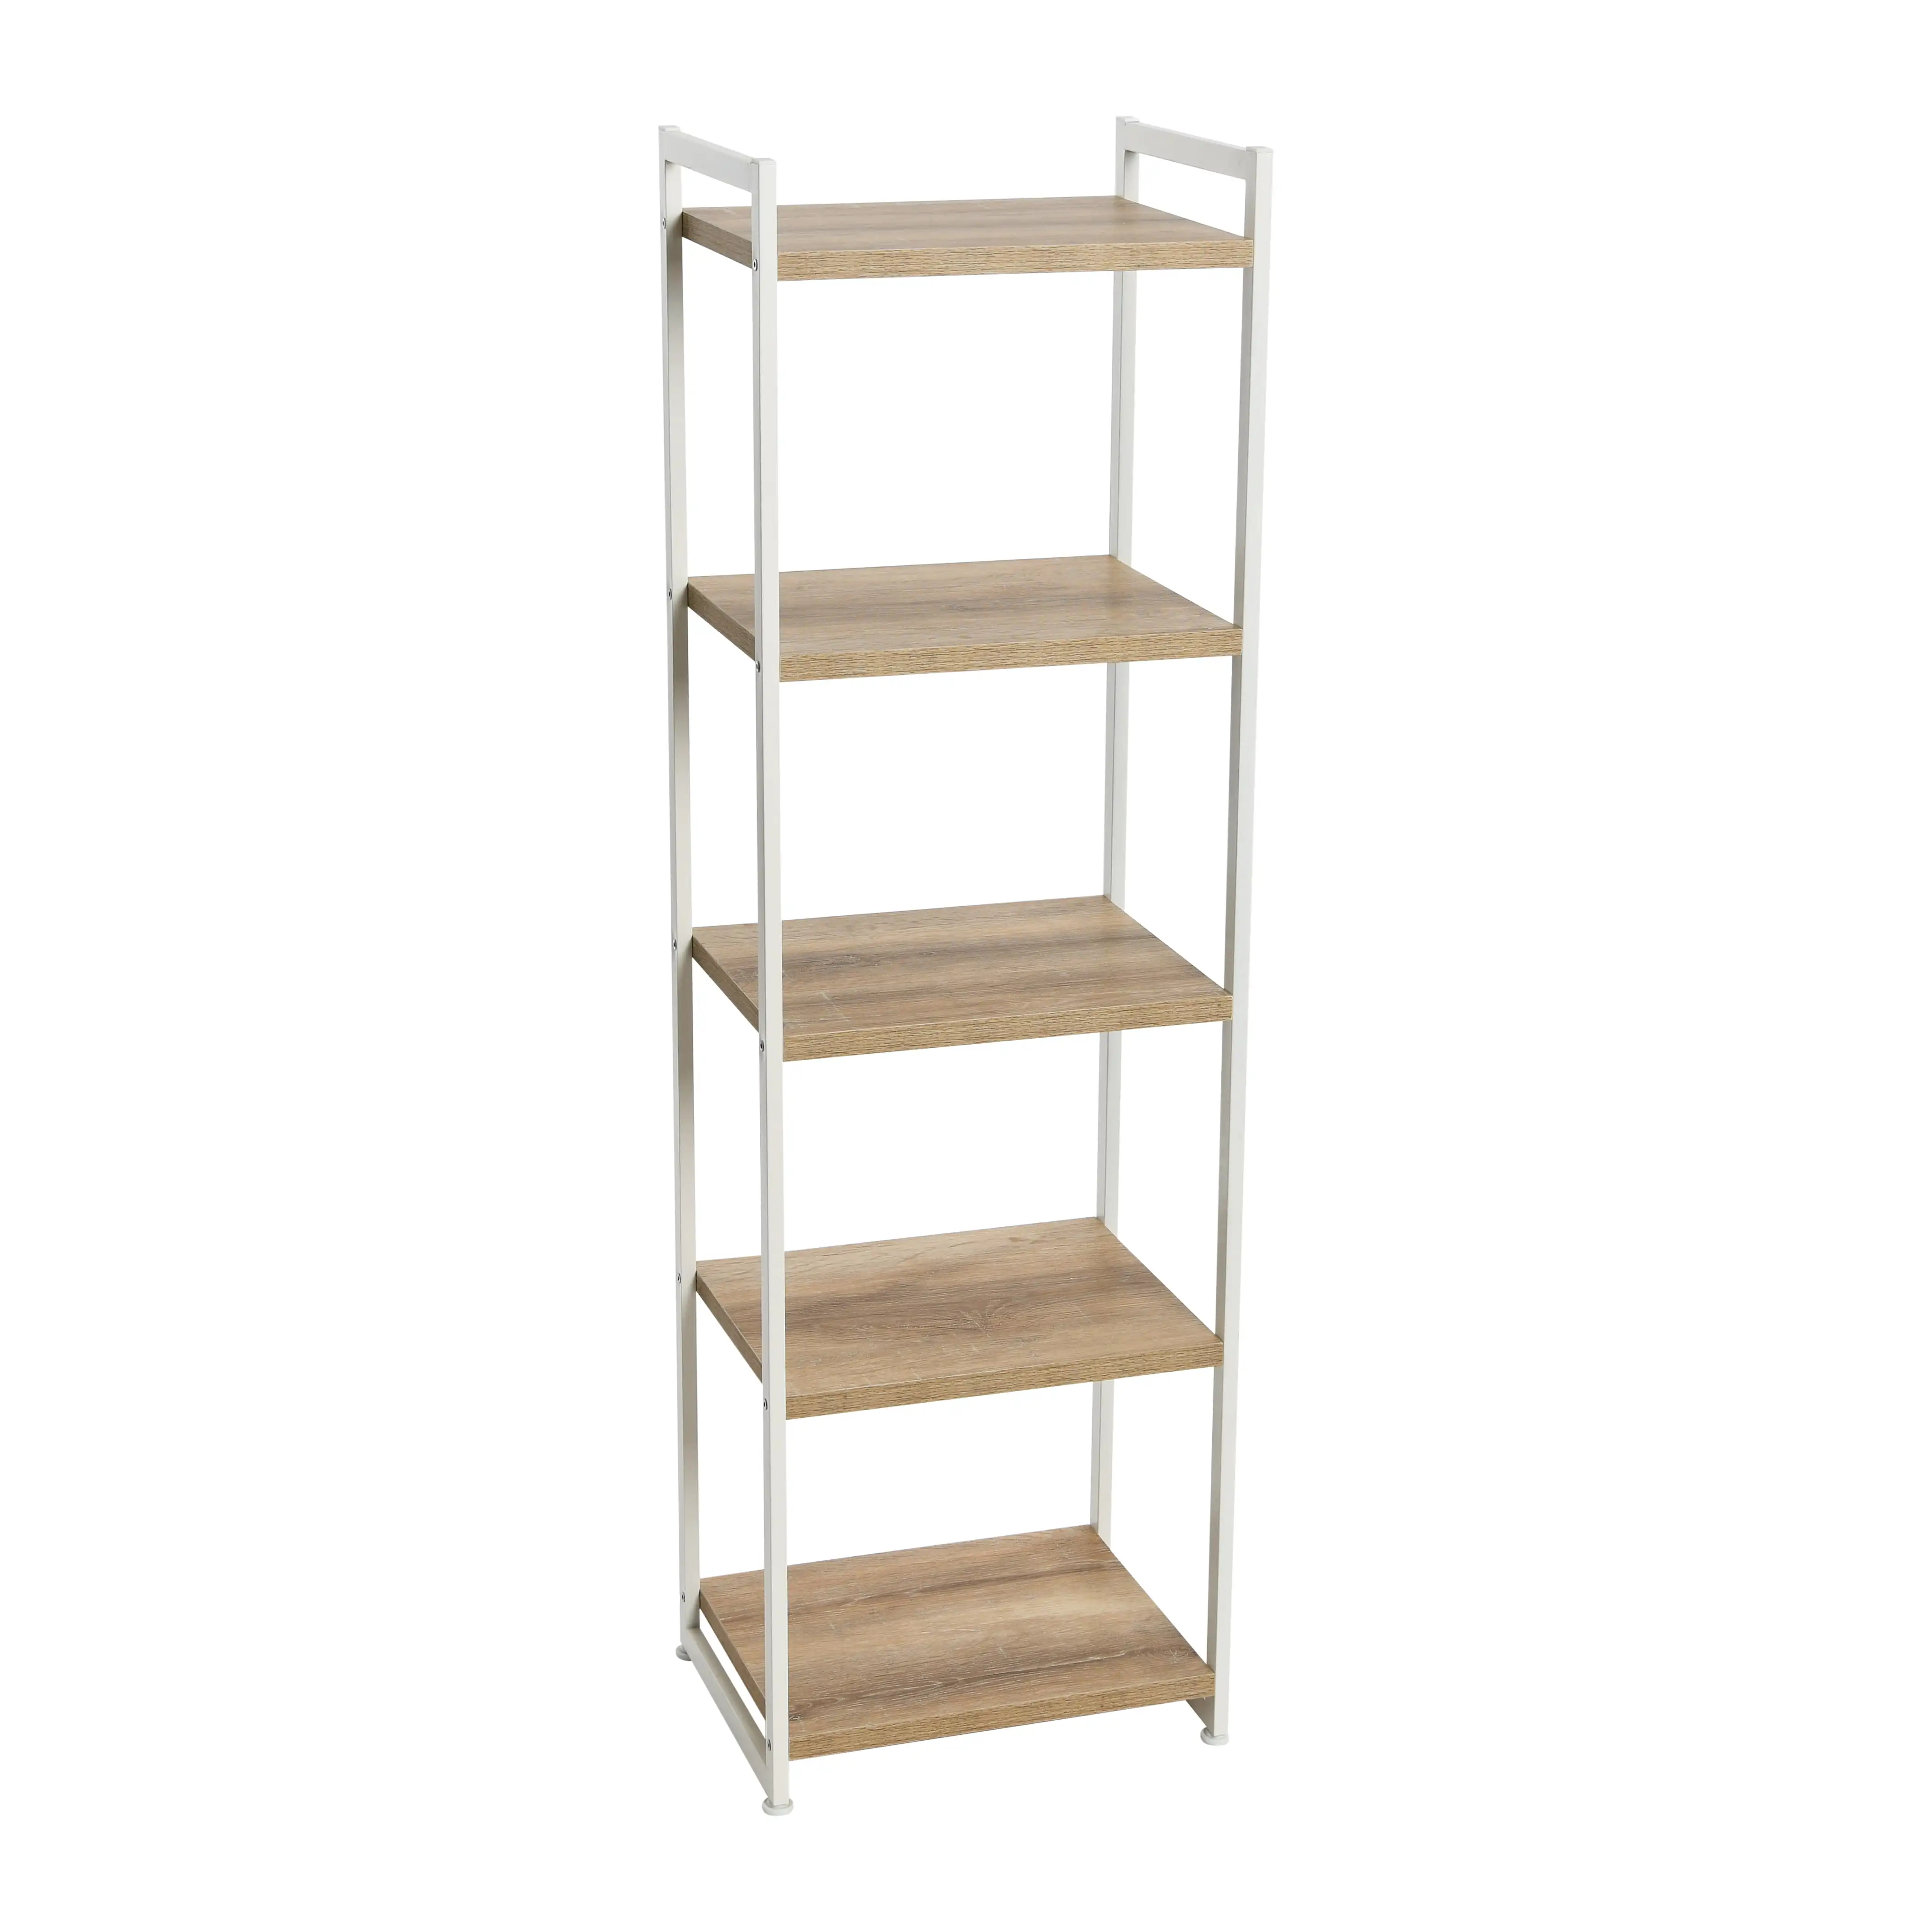 

Household Essentials Tower Bookshelf, Tall and Narrow Bookshelf with 5 Shelves, Coastal Oak Wood Grain White Metal,